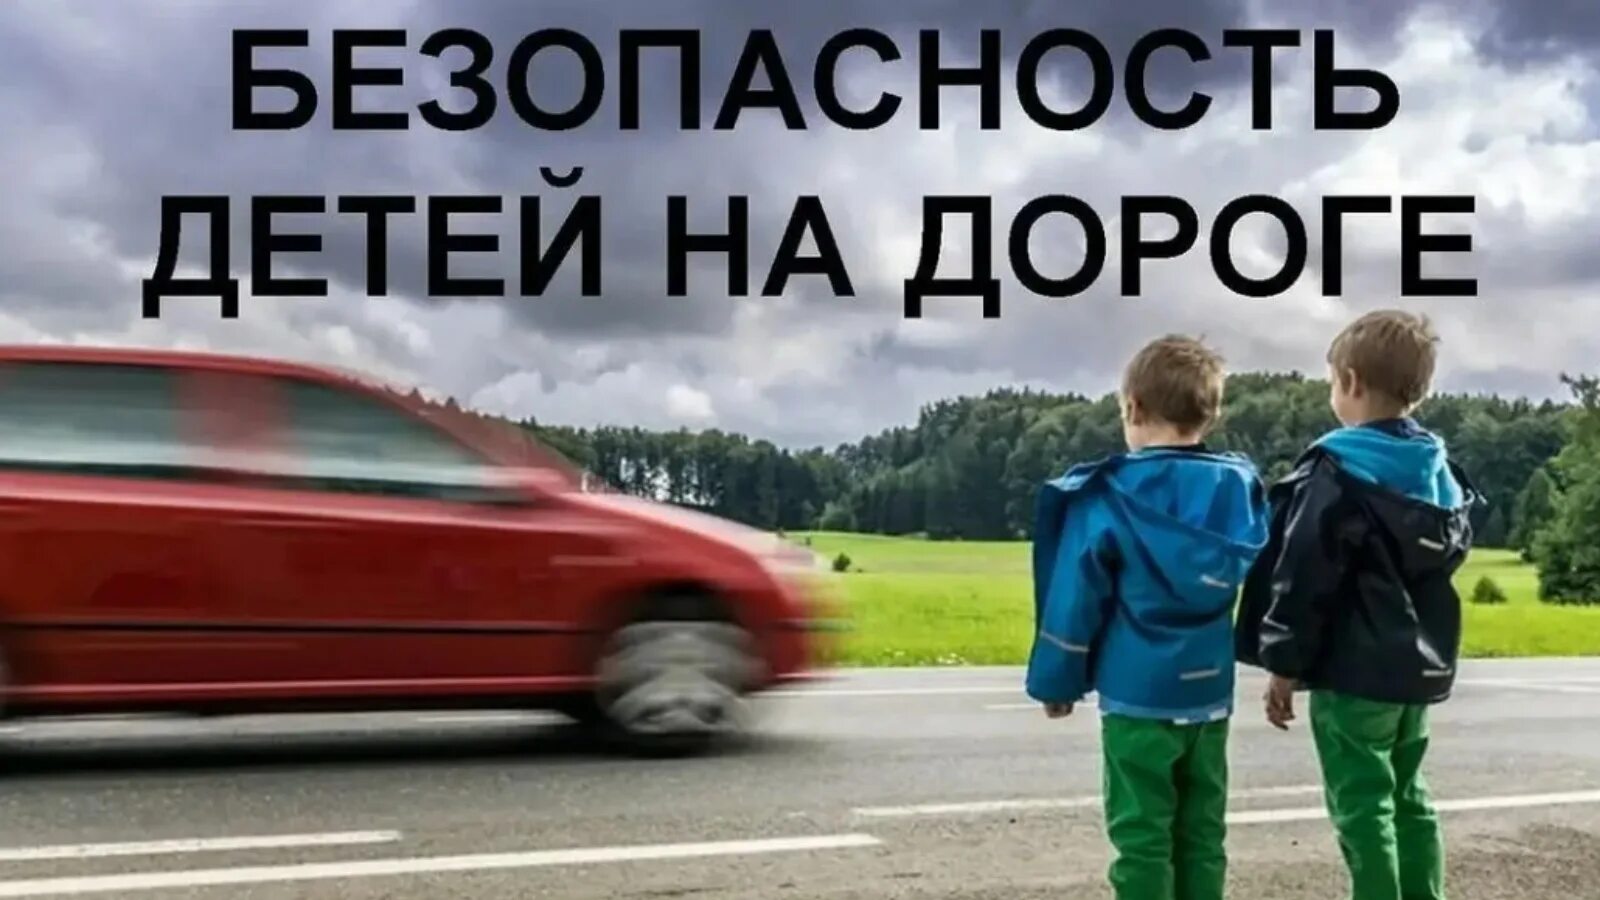 Ту у дорога дети. Дети на дороге. Детский травматизм на дорогах. ДТП С детьми дети на дороге. Безопасность детей на дороге ДТП.